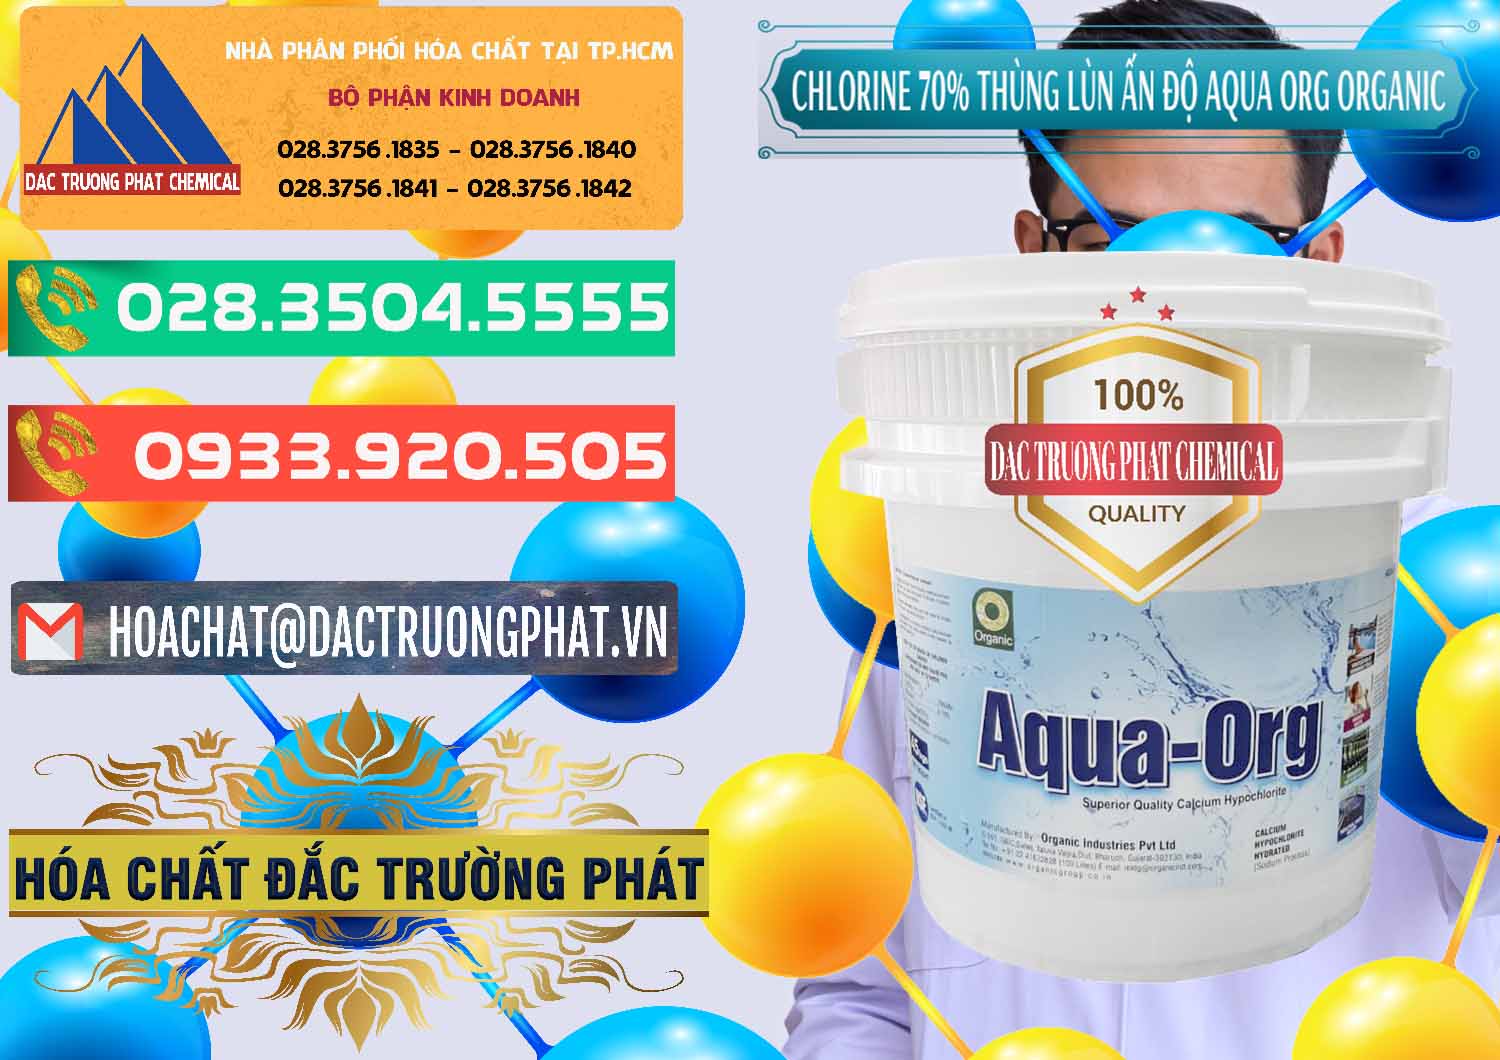 Kinh doanh - bán Chlorine – Clorin 70% Thùng Lùn Ấn Độ Aqua ORG Organic India - 0212 - Công ty cung cấp và nhập khẩu hóa chất tại TP.HCM - congtyhoachat.com.vn